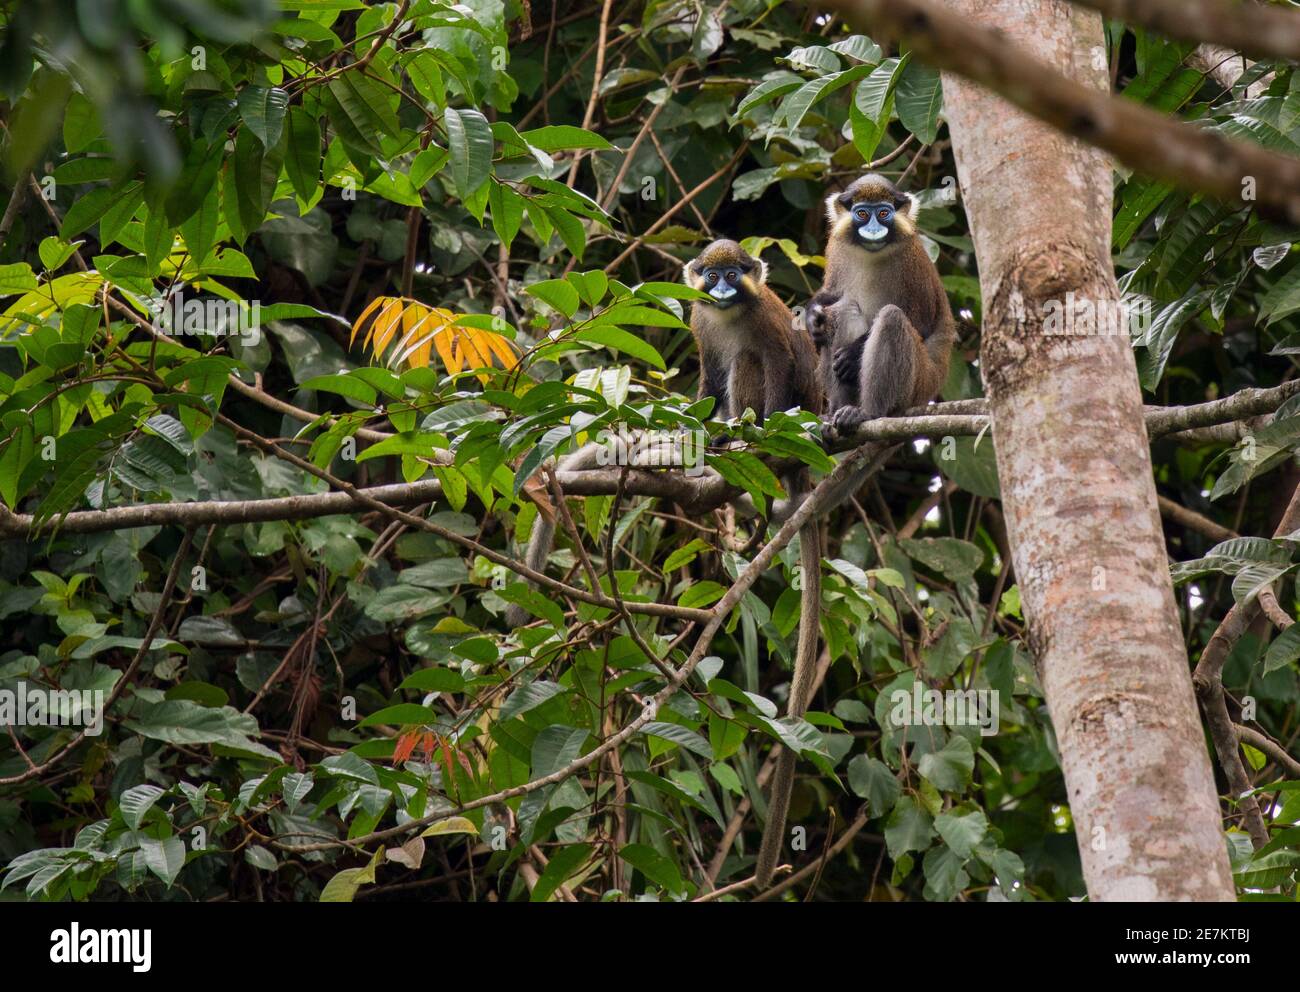 Singe moustaché ou Guenon (Cercopithecus cephus) Parc national de Loango, Gabon, Afrique centrale Banque D'Images